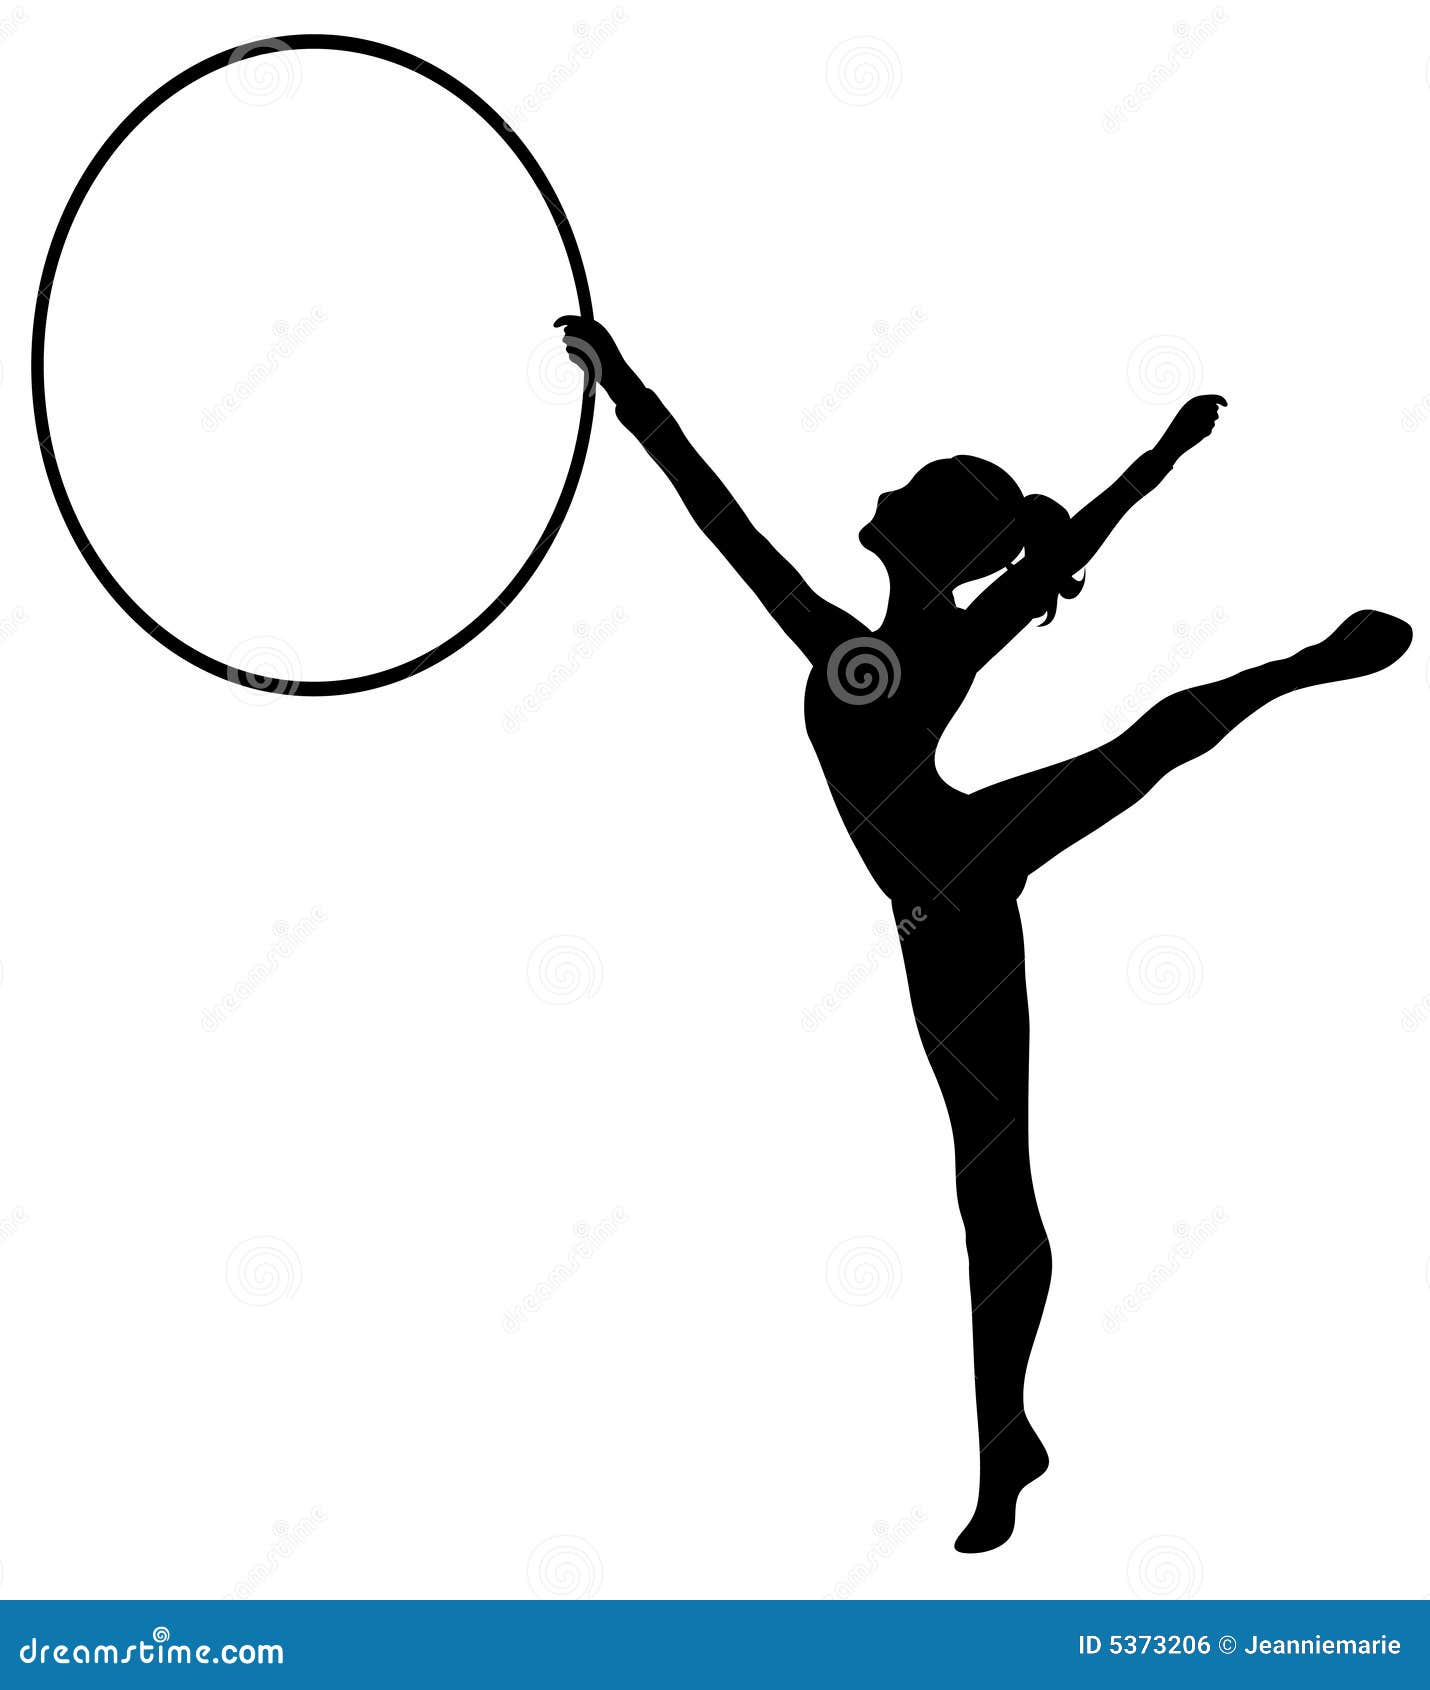 rhythmic gymnastics: hoop bw